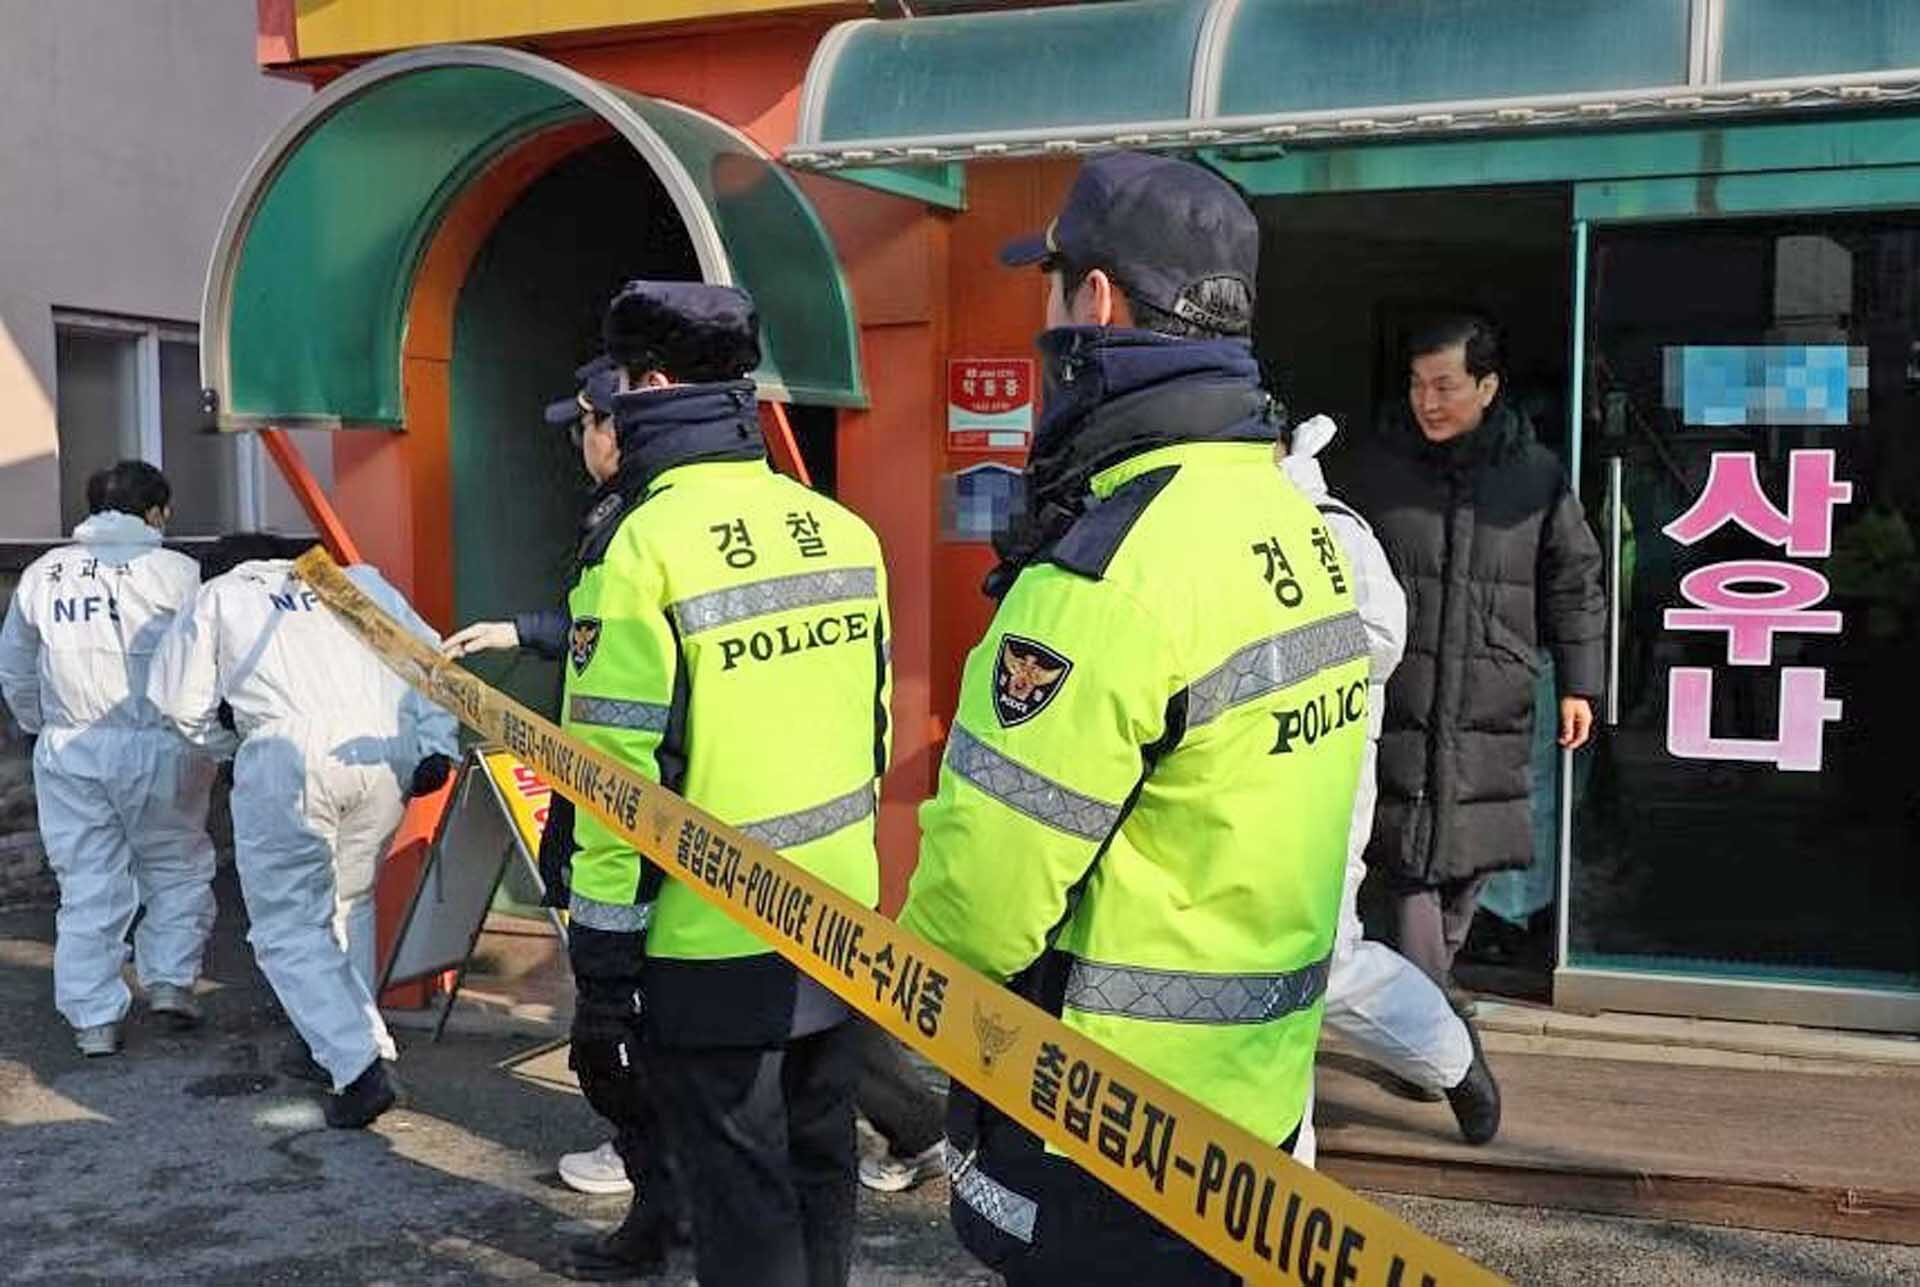 หญิงสูงวัย 3 คน “ถูกไฟดูดดับ” คาบ่อโรงอาบน้ำ ตร.เกาหลีใต้คาดไฟฟ้าลัดวงจร